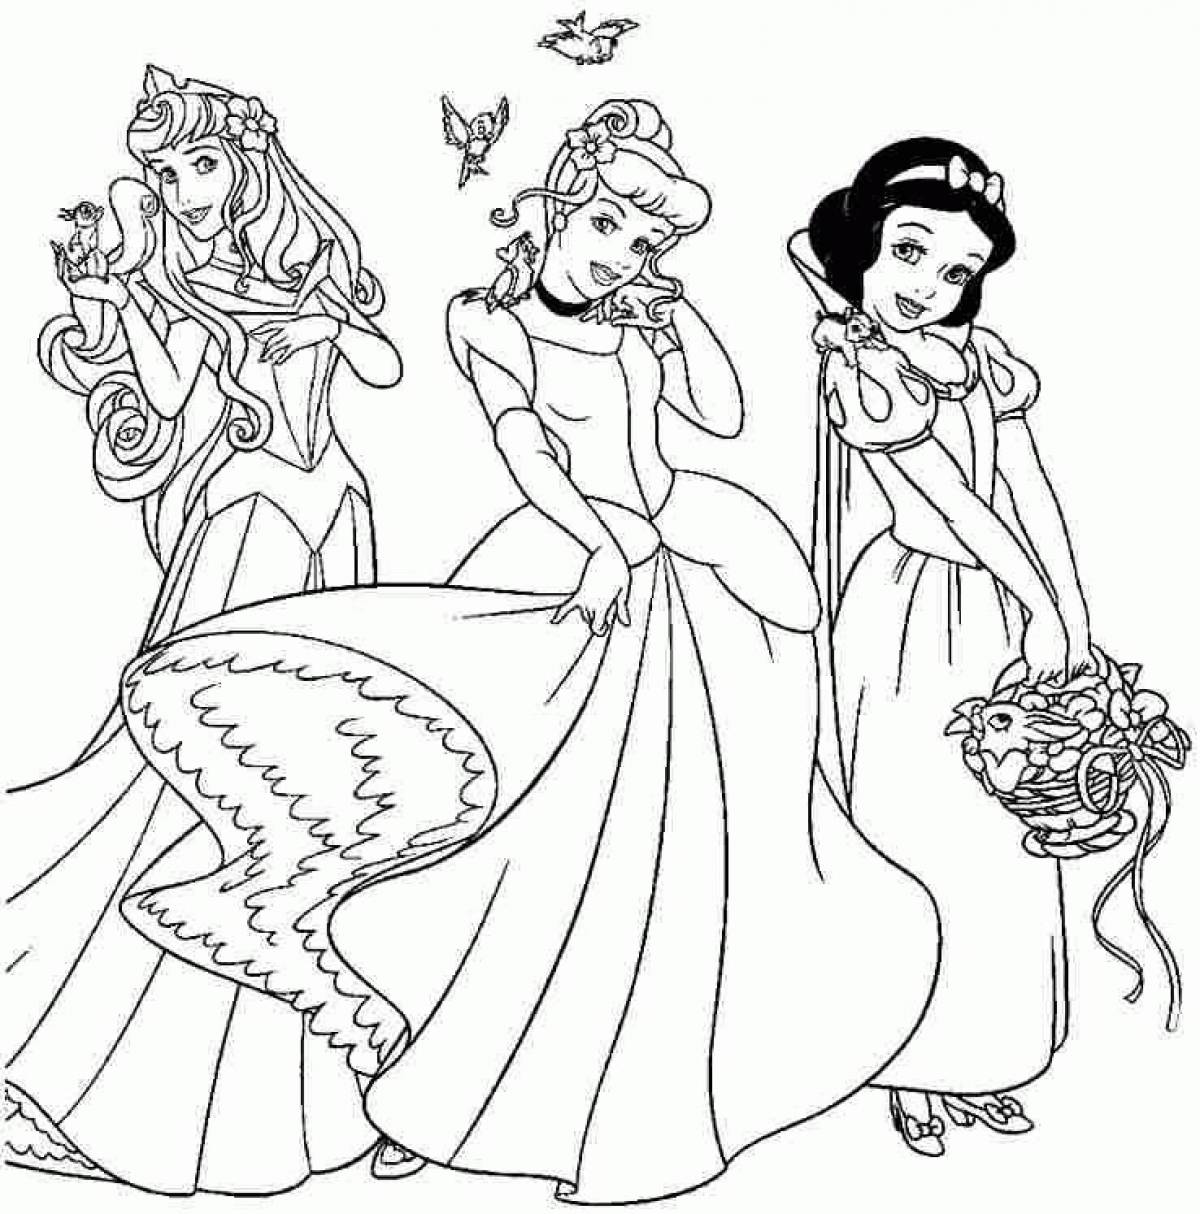 Sensational coloring of Disney princesses in beautiful dresses